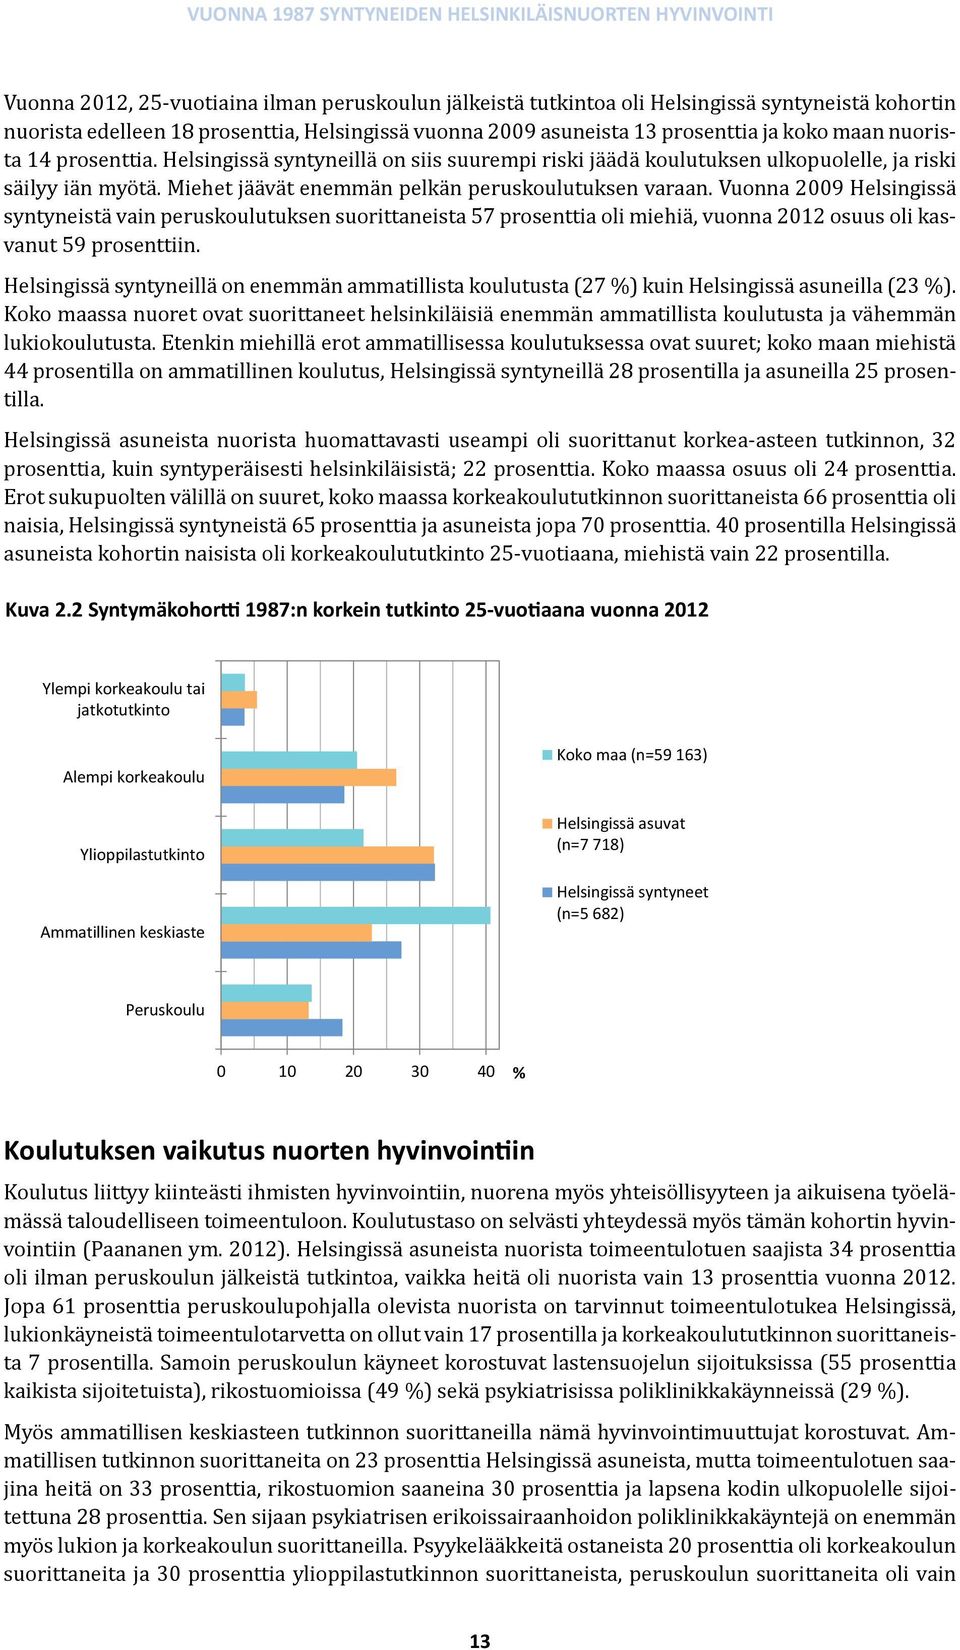 Vuonna 2009 Helsingissä syntyneistä vain peruskoulutuksen suorittaneista 57 prosenttia oli miehiä, vuonna 2012 osuus oli kasvanut 59 prosenttiin.